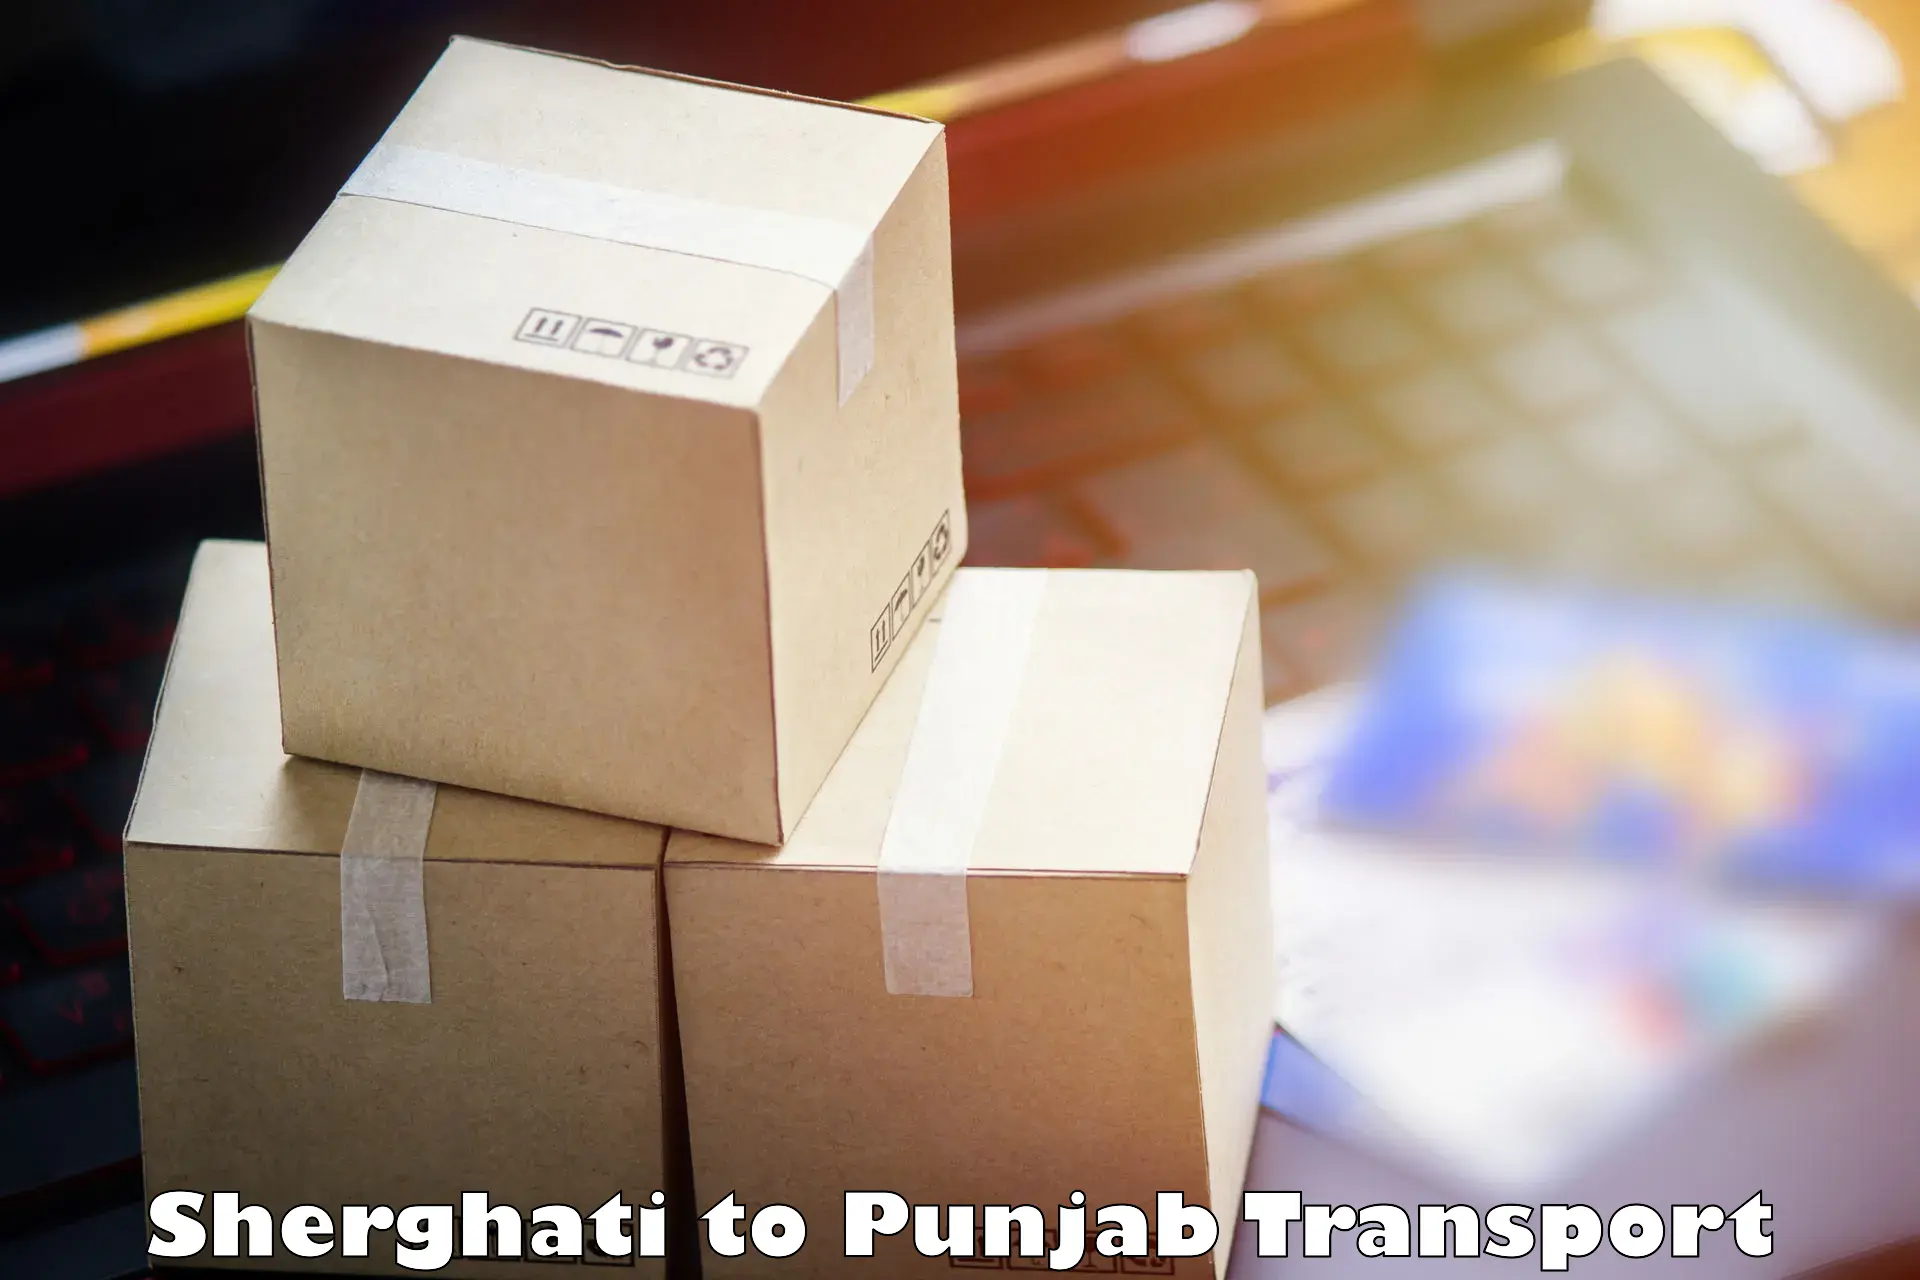 Domestic goods transportation services Sherghati to Hoshiarpur